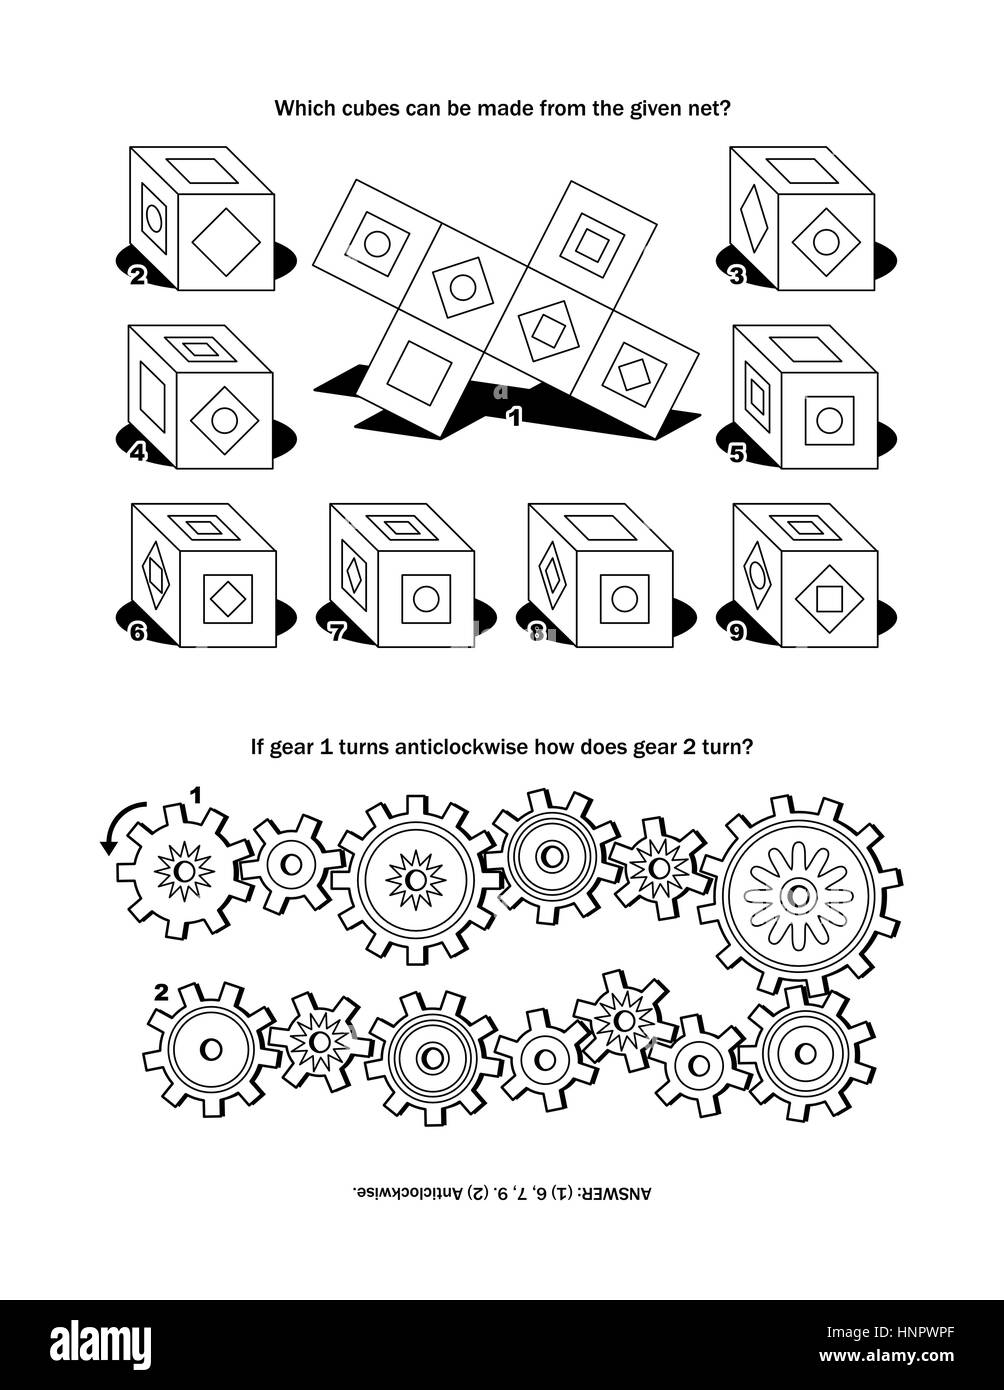 Pagina di puzzle con due puzzle: che i cubi possono essere realizzati dalla data net? Se la ruota dentata 1 ruota in senso antiorario come funziona la marcia 2 girare? Risposta inclusa. Illustrazione Vettoriale